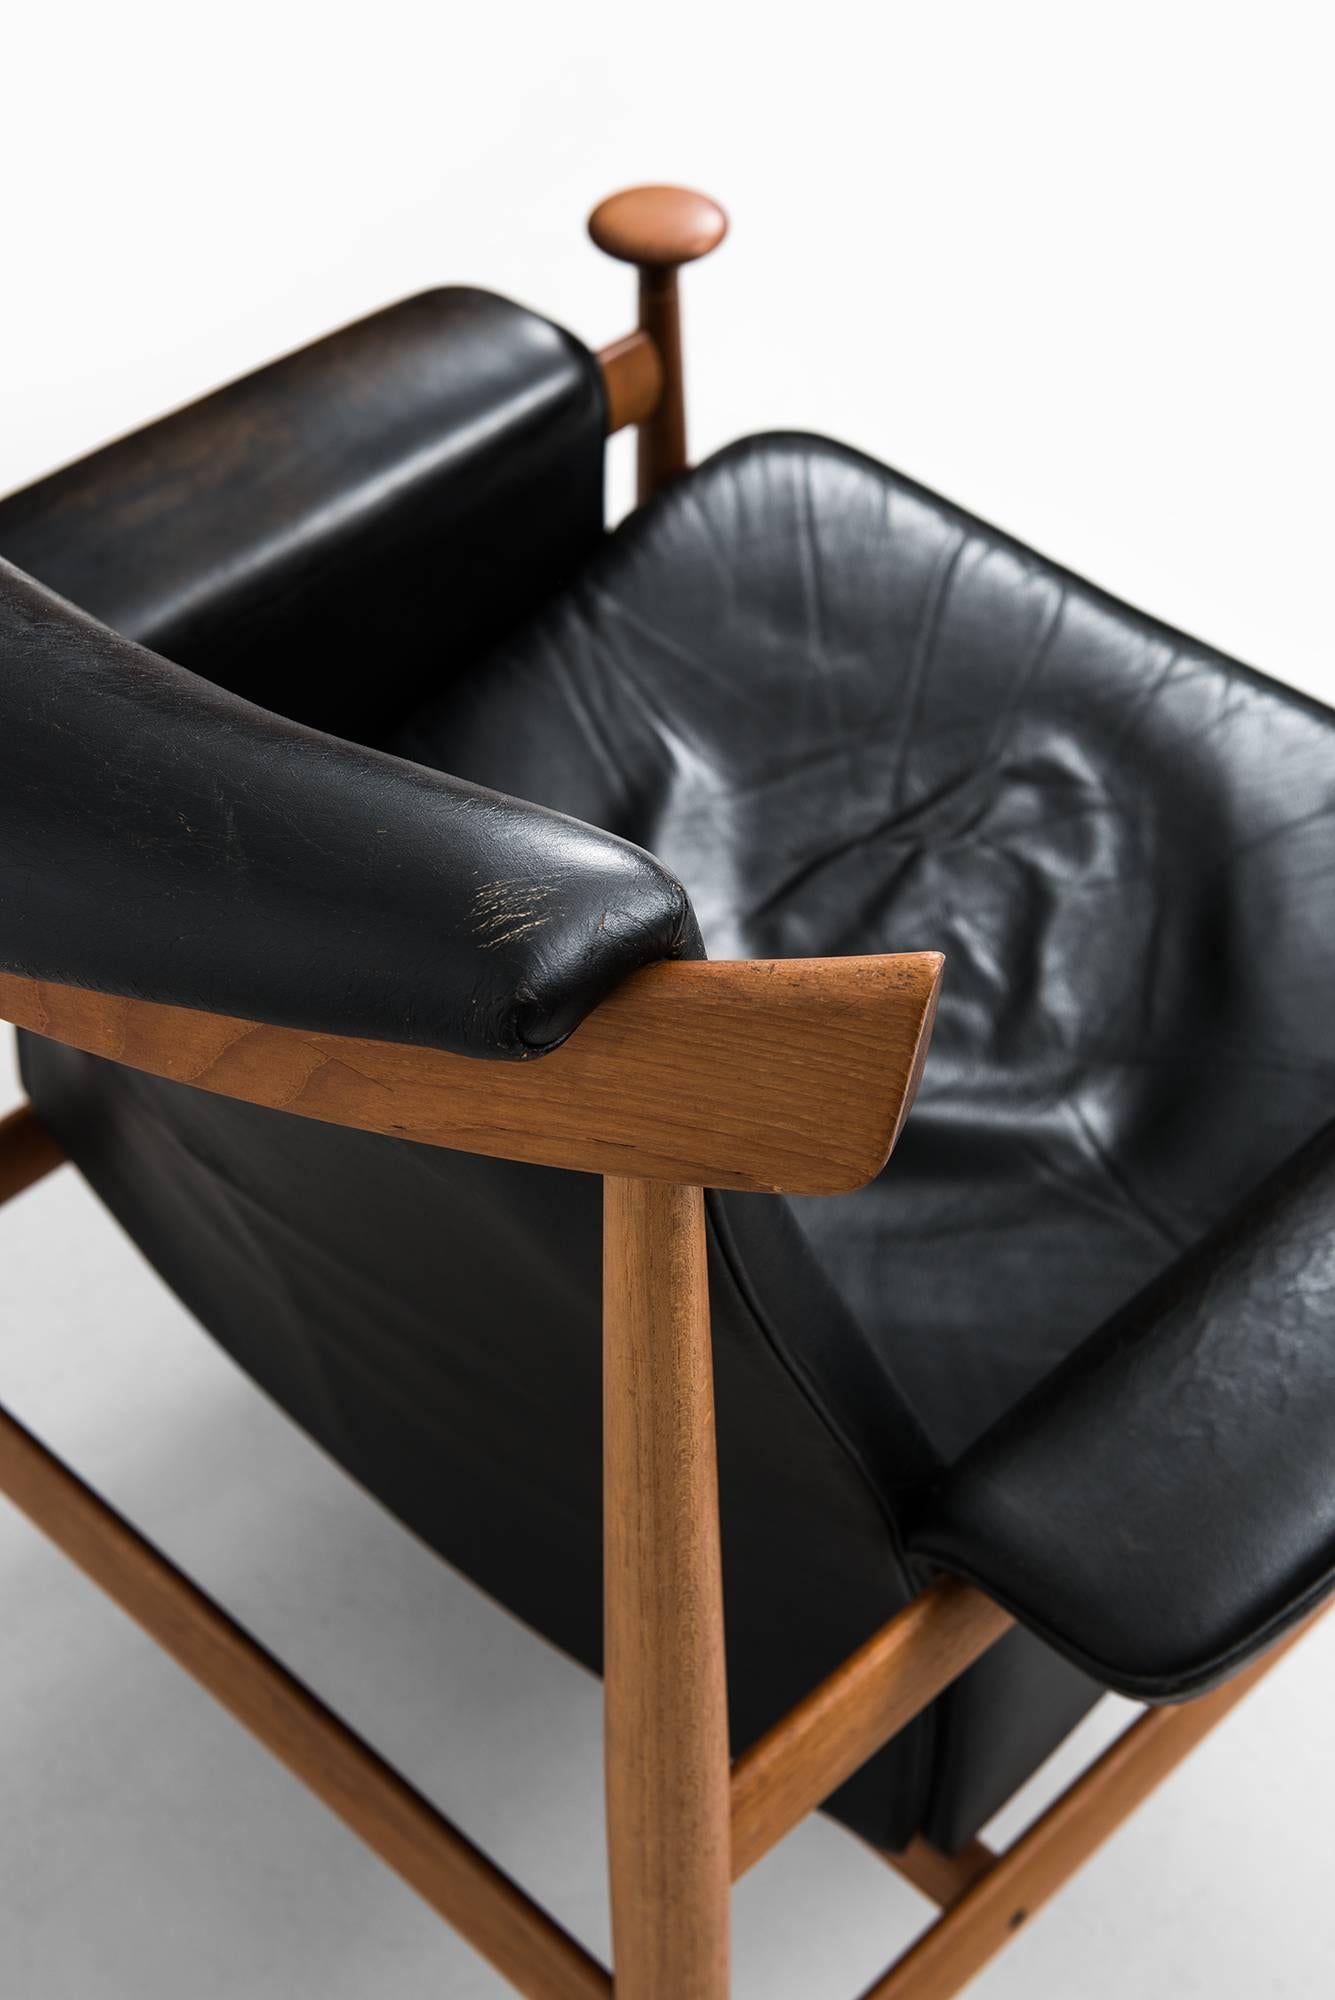 Leather Finn Juhl Easy Chair Model Bwana by France & Daverkosen in Denmark